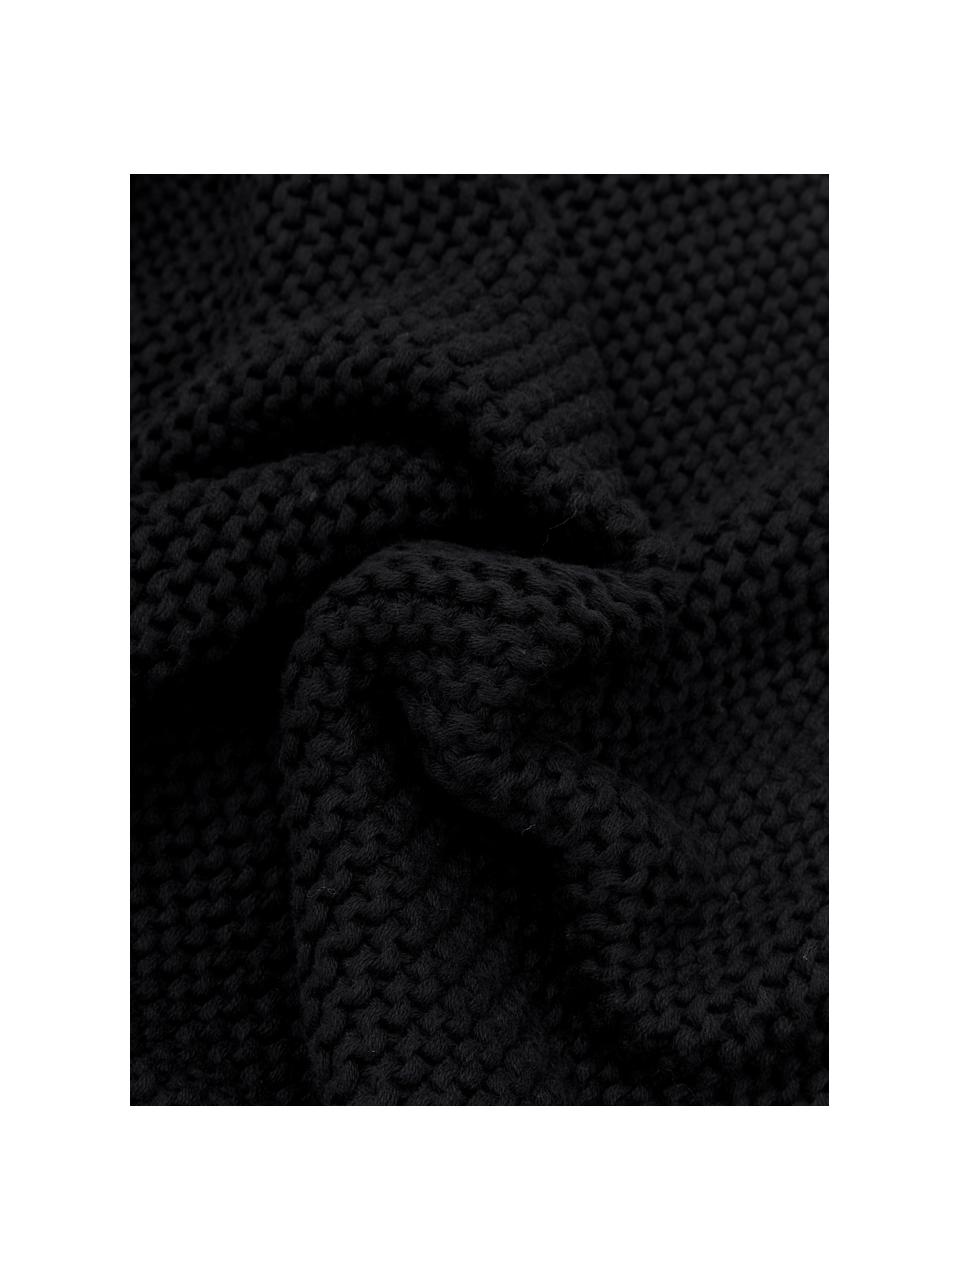 Gebreide kussenhoes Adalyn van biokatoen in zwart, 100% biokatoen, GOTS-gecertificeerd, Zwart, B 40 x L 40 cm